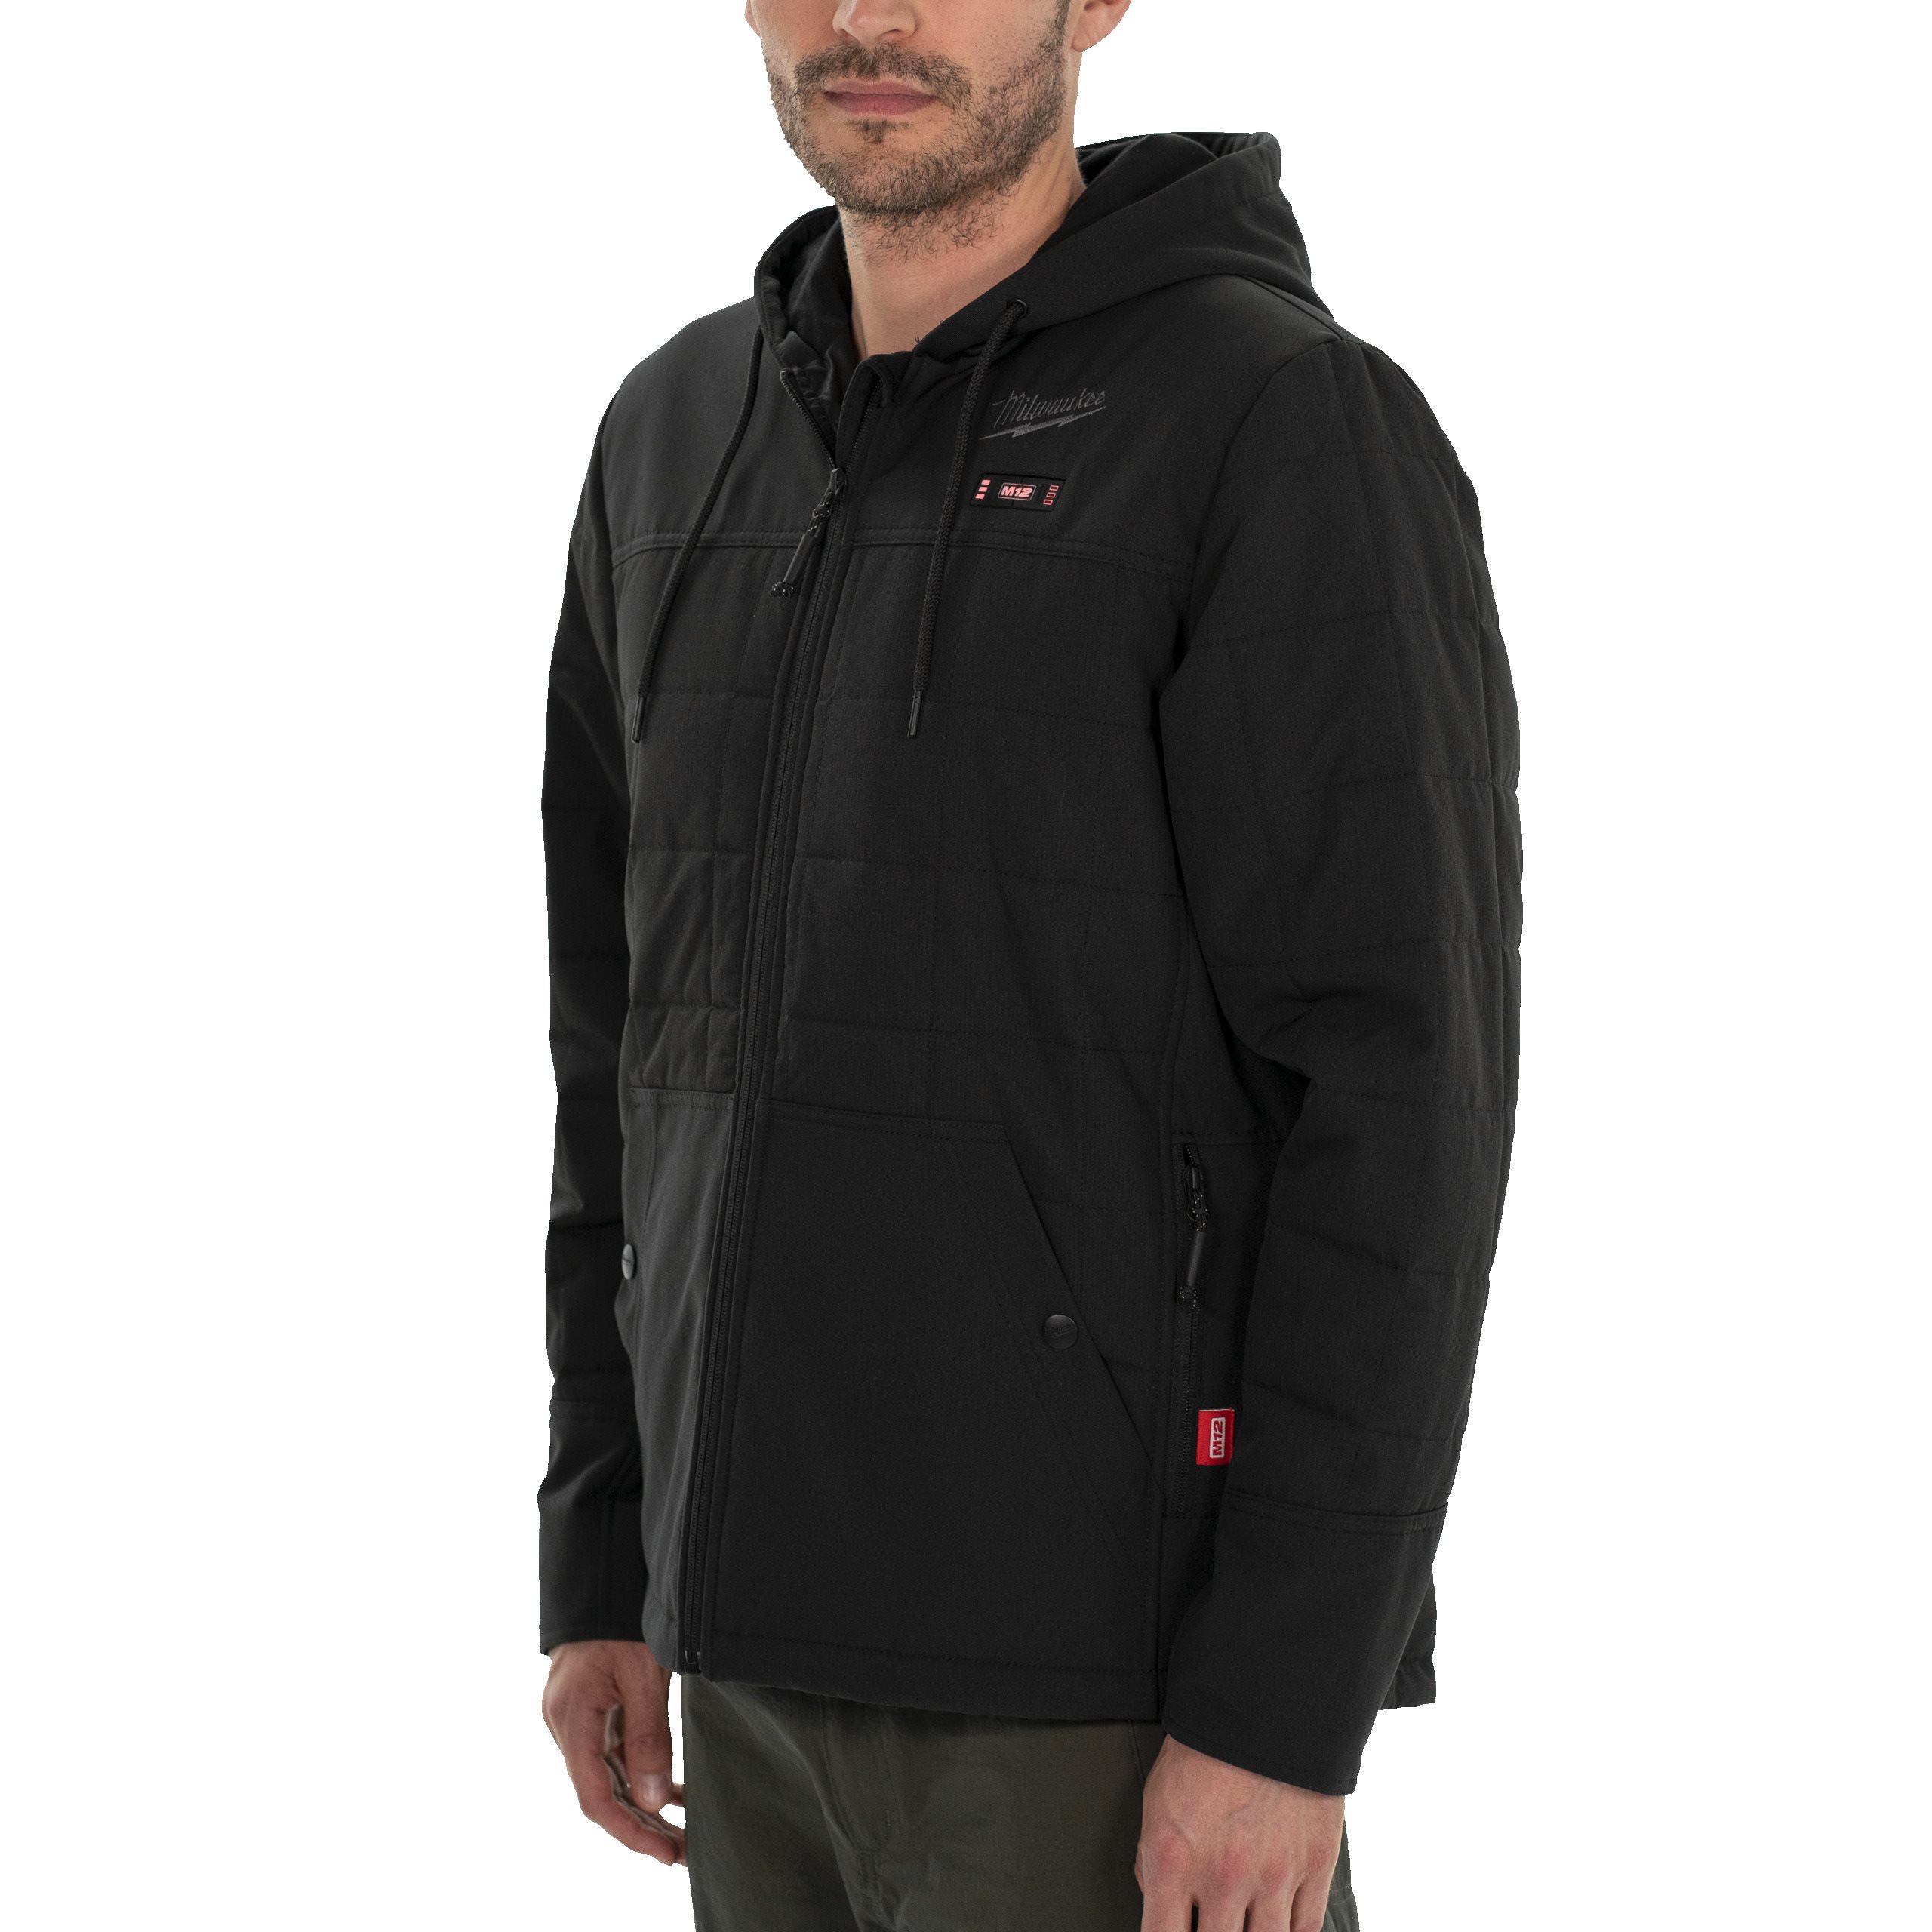 Куртка черная с подогревом и капюшоном Milwaukee M12 HPJ BL2-0 (XL) (Арт. 4932480074)